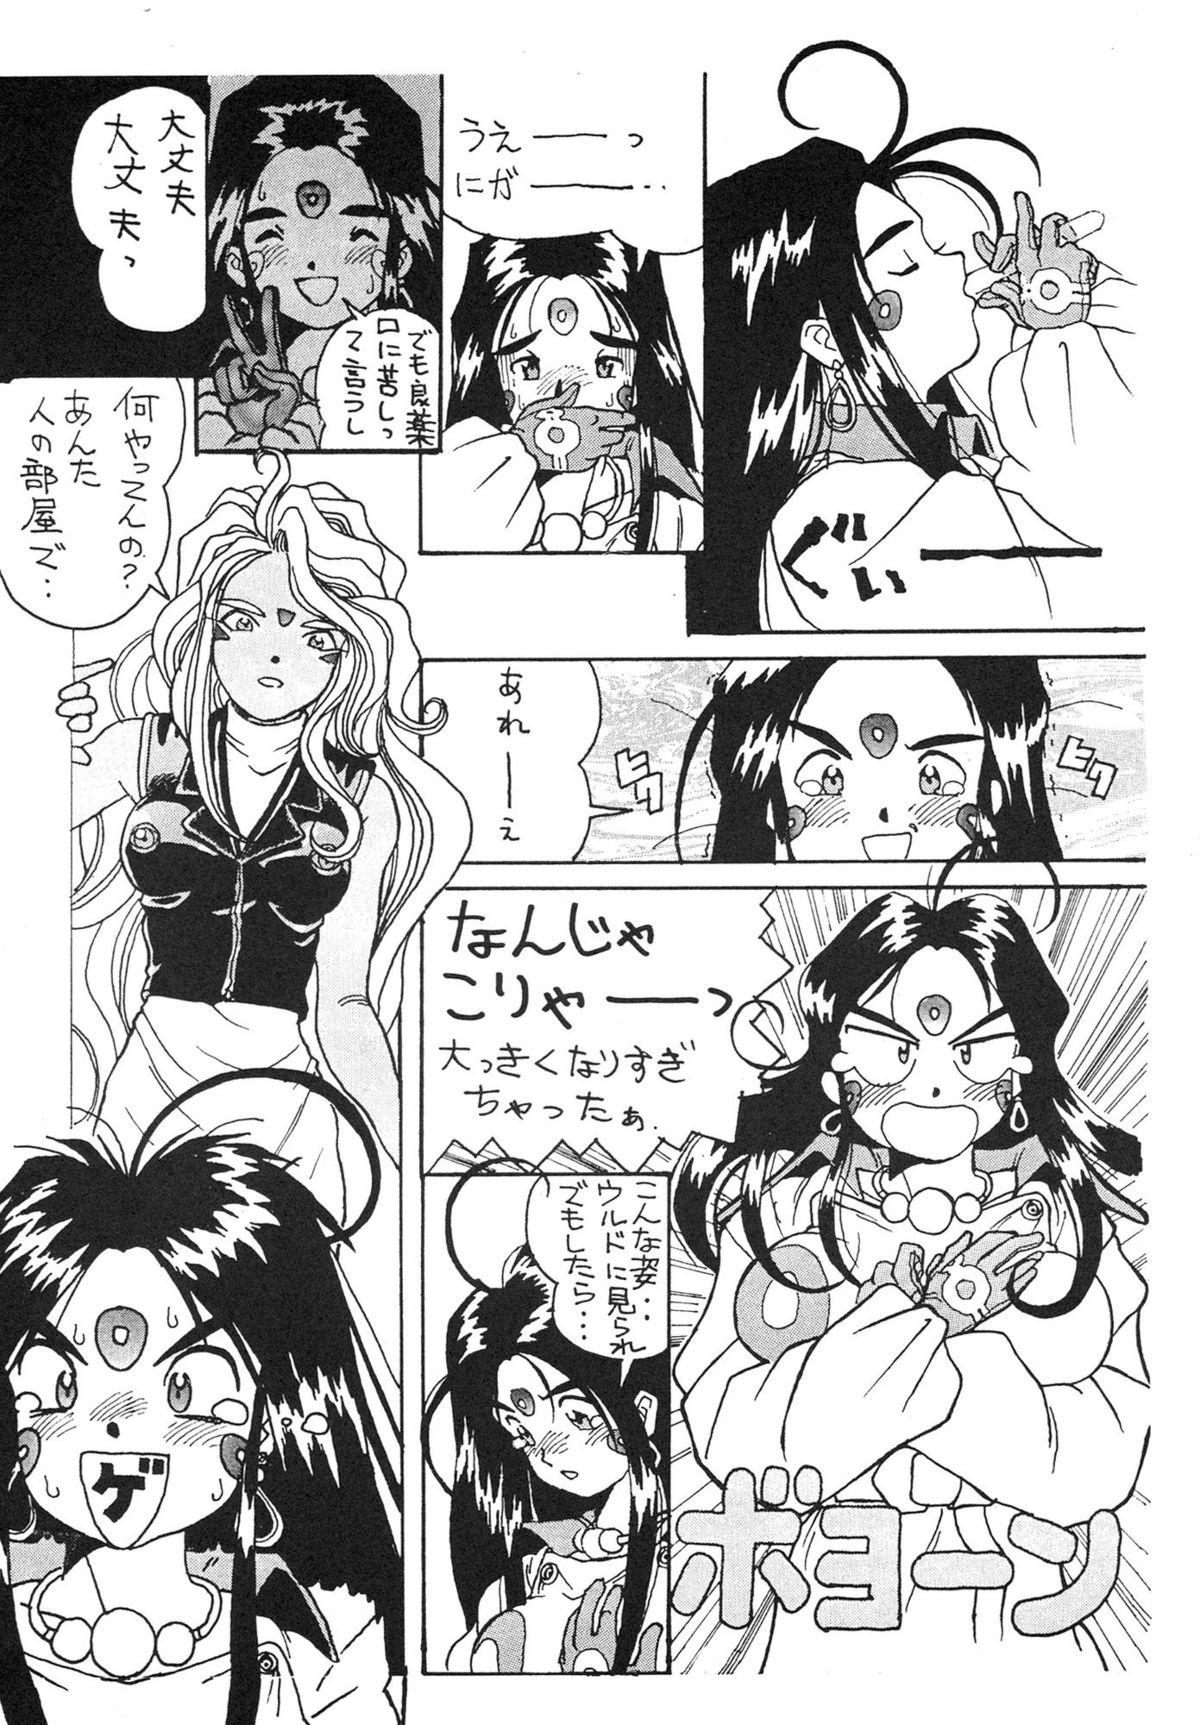 Workout Ah Ah Megamisamasama - Ah my goddess Hooker - Page 11